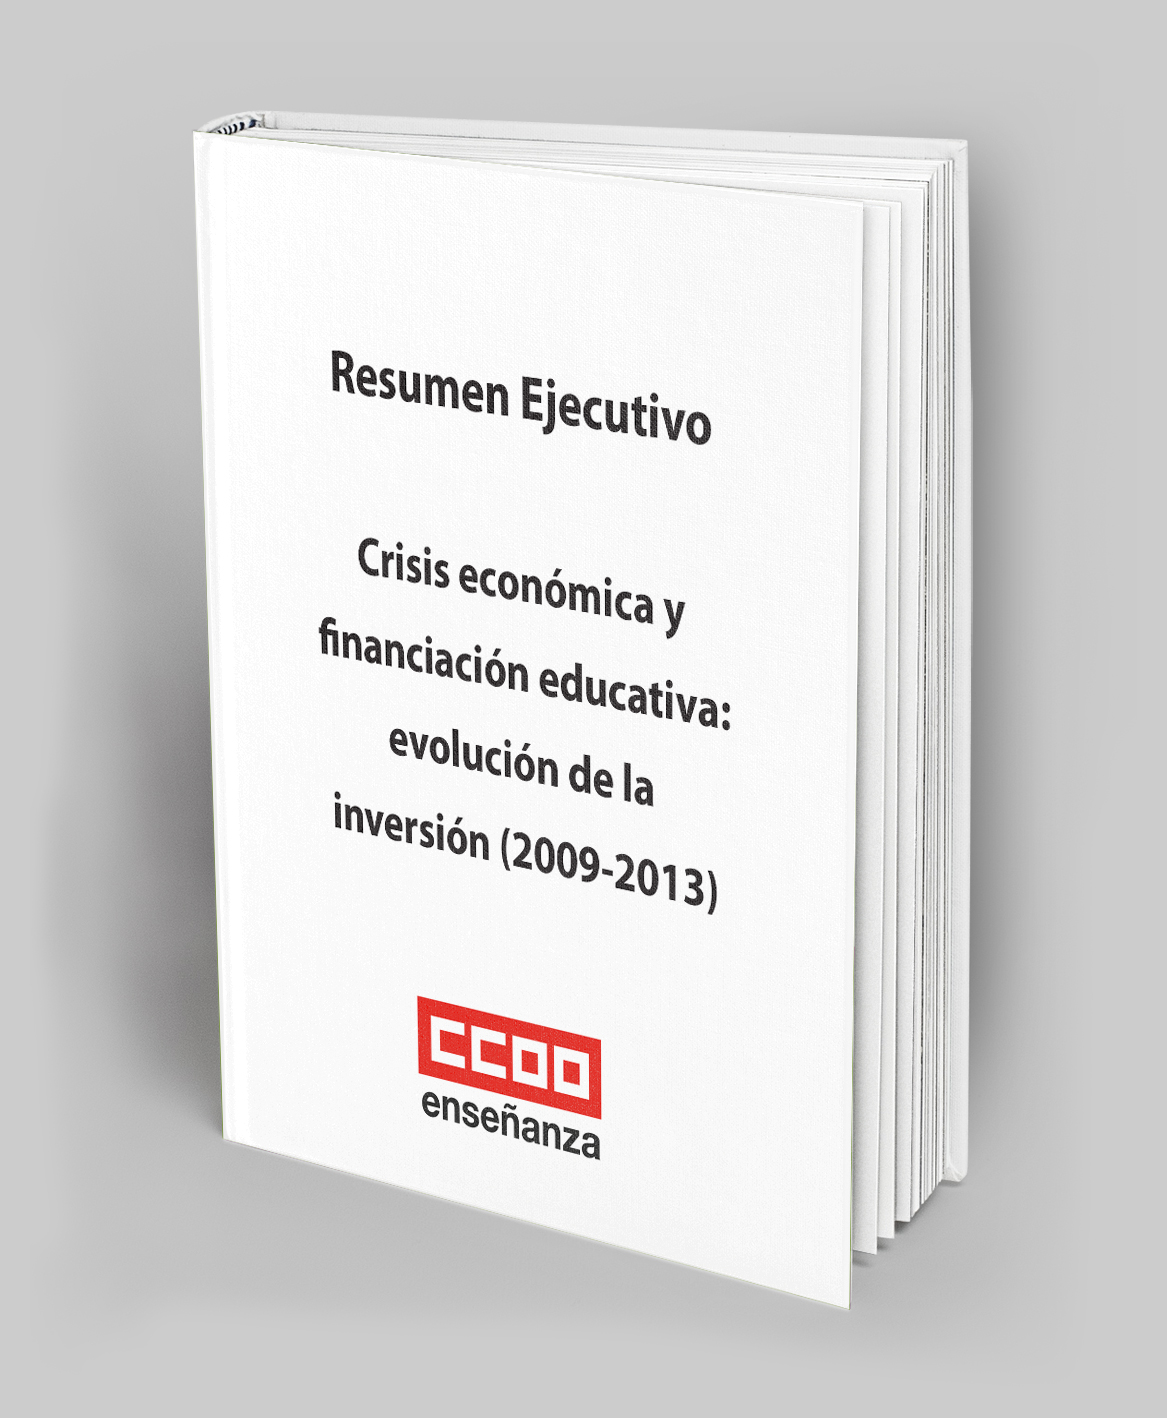 Resumen_ejecutivo_Informe_Crisis_economica_y_financiacion_educativa__evolucion_de_la_inversion_2009-2013